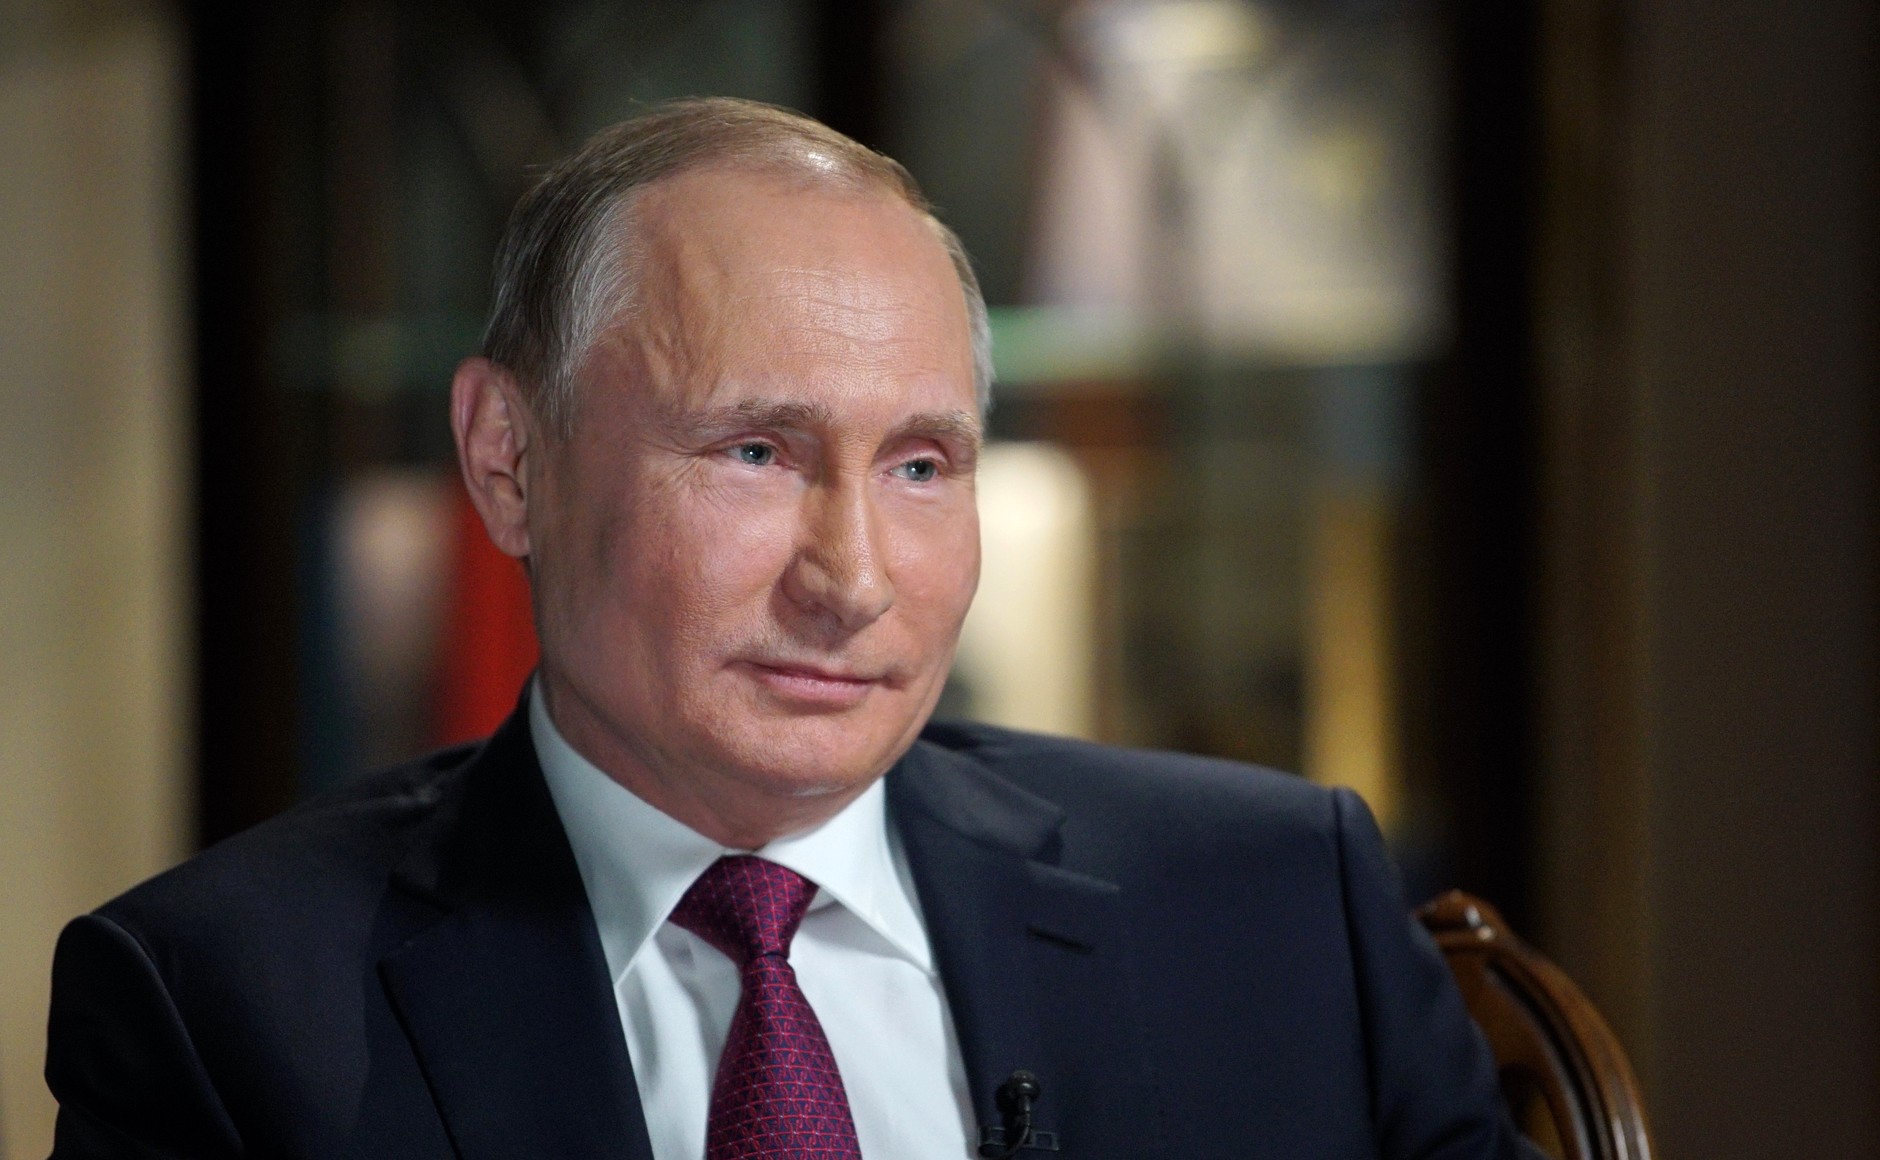 Путин: Донбасс мы не бросим